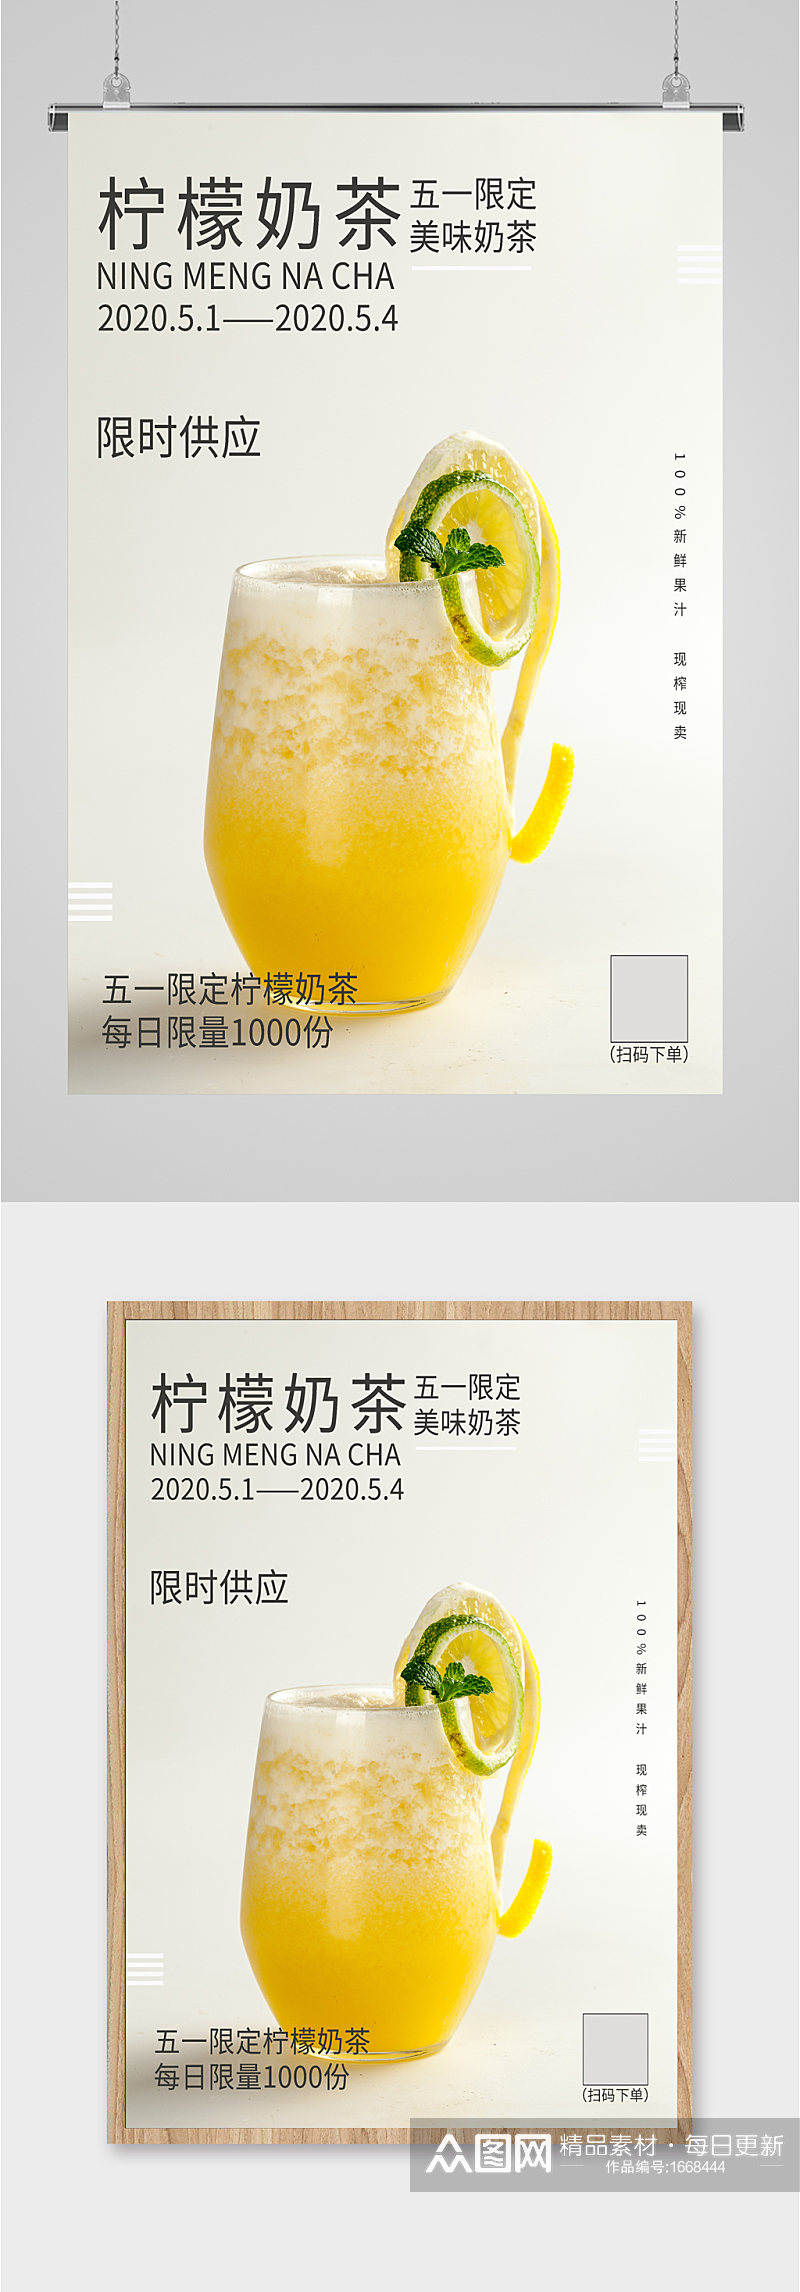 柠檬奶茶新品活动海报素材